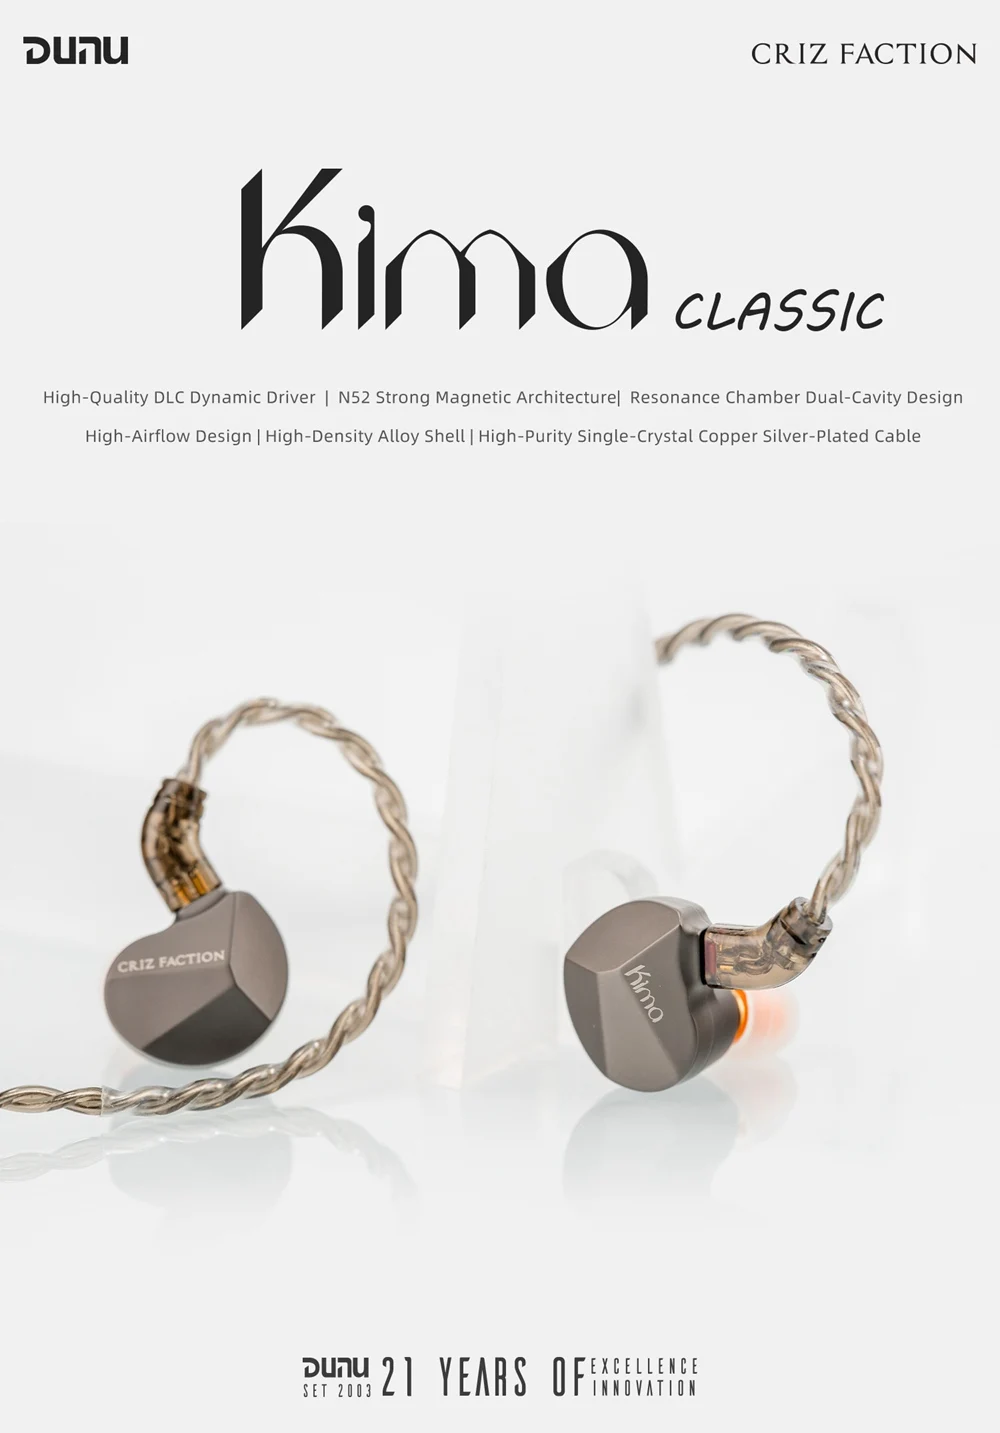 

Классические наушники DUNU Kima с динамическим драйвером IEMs, наушники-вкладыши, однокристальный медный посеребренный кабель, 2 контакта, 3,5 мм, S12 Pro